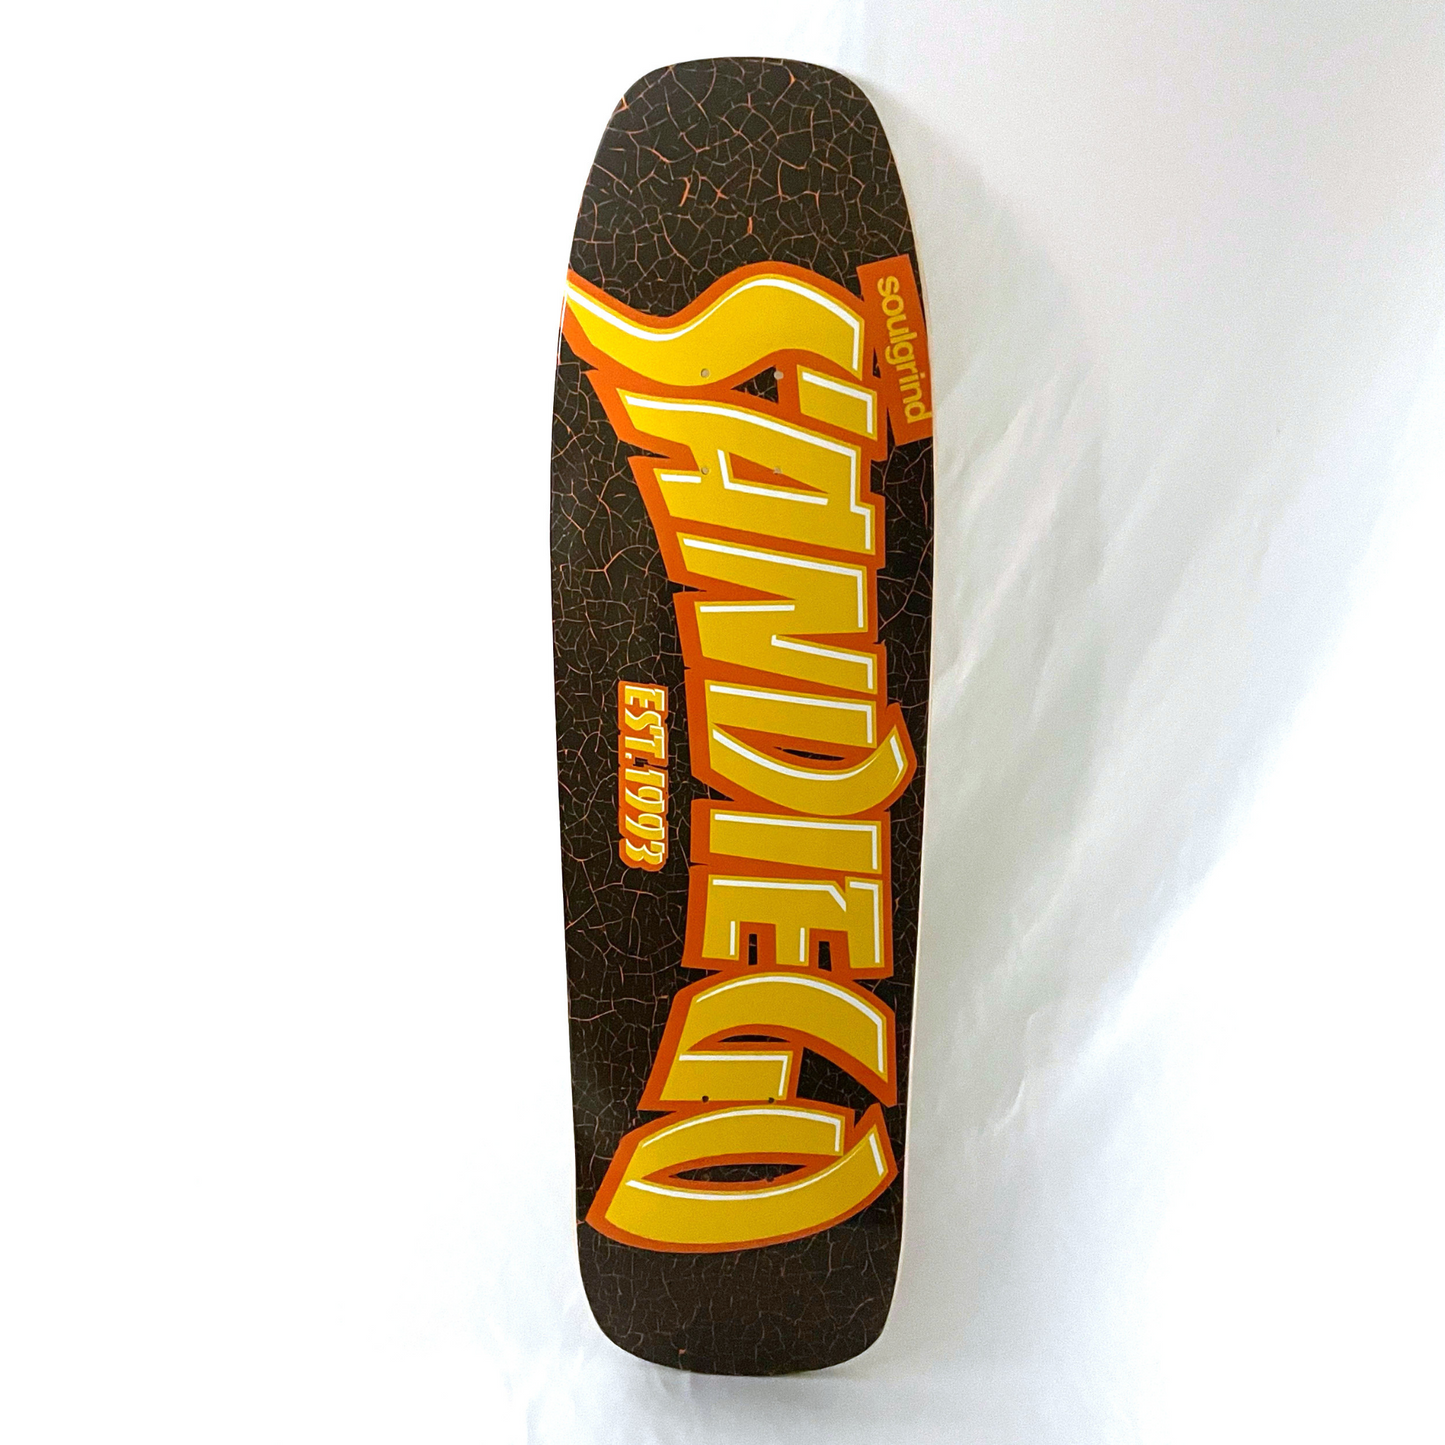 San Diego Shovel Nose Skateboard Deck - "Friar" Colorway - 9.0